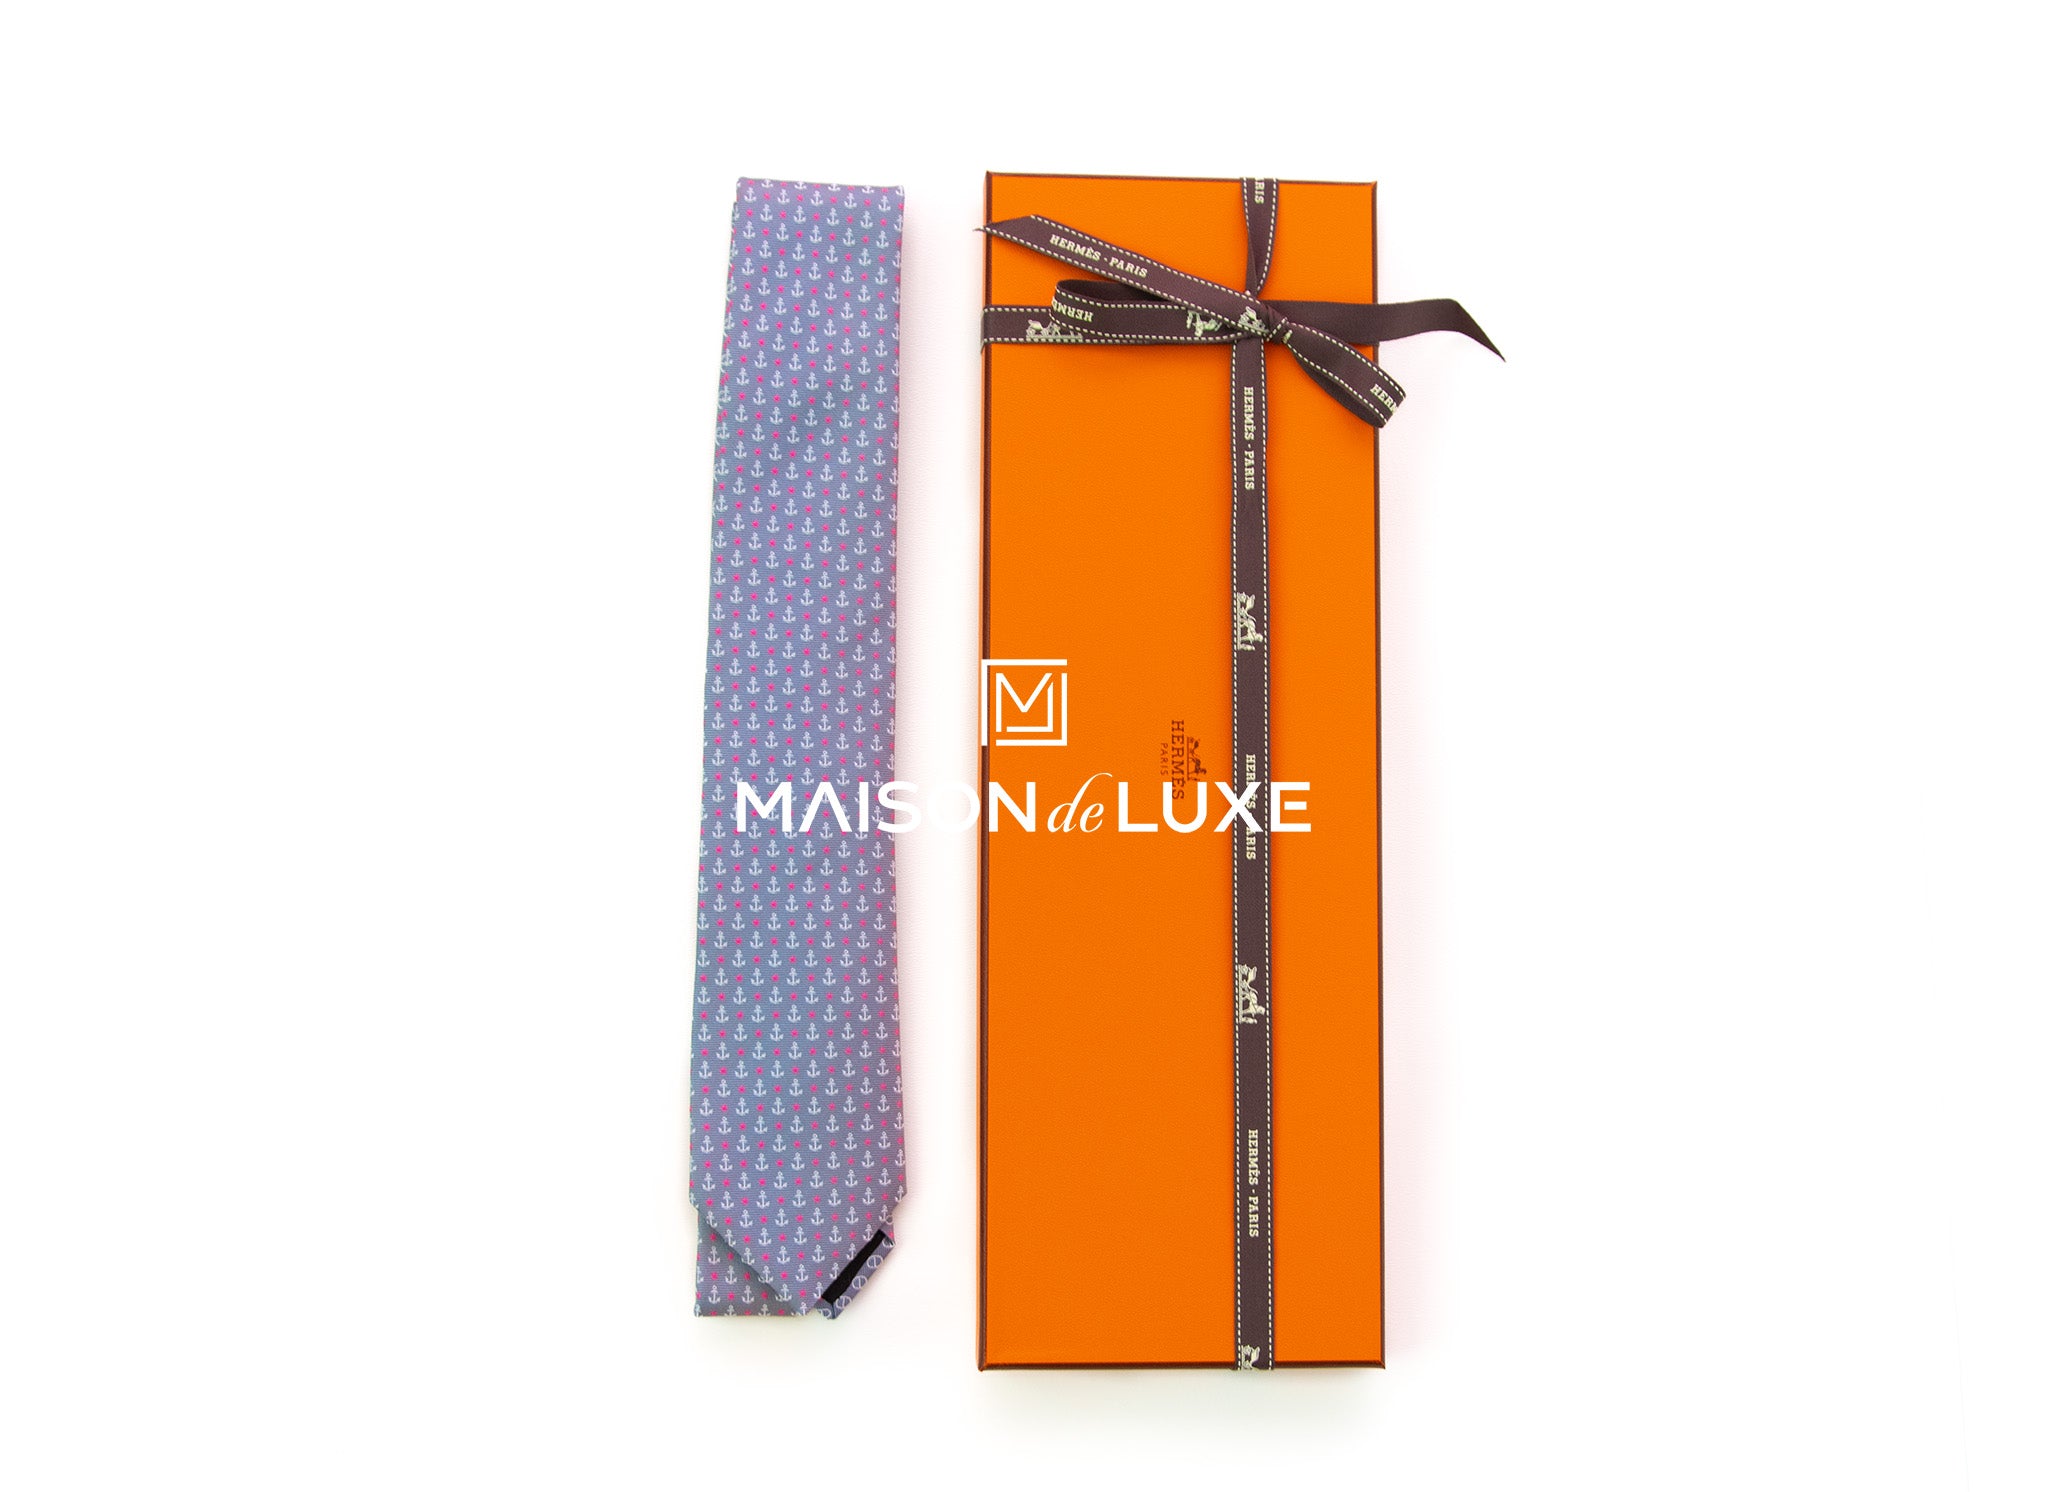 Hermès Ties - Is It Worth Buying A Hermes Tie?